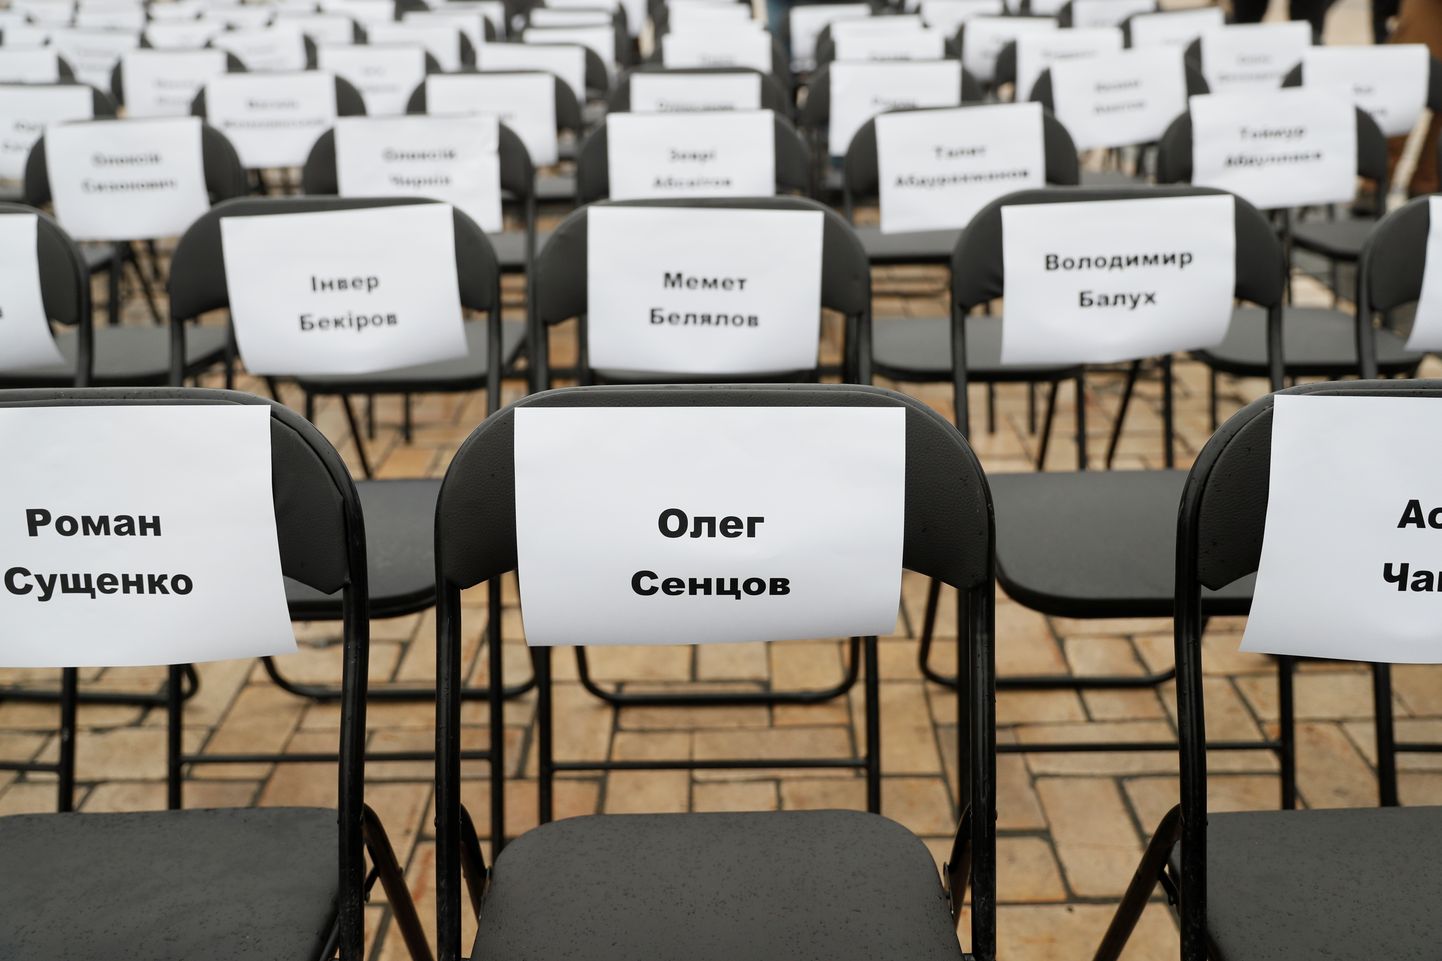 Pilt eelmise aasta etendusest, kus kinnitati toolidele lehed Venemaal vangistatud ukrainlaste nimedega.